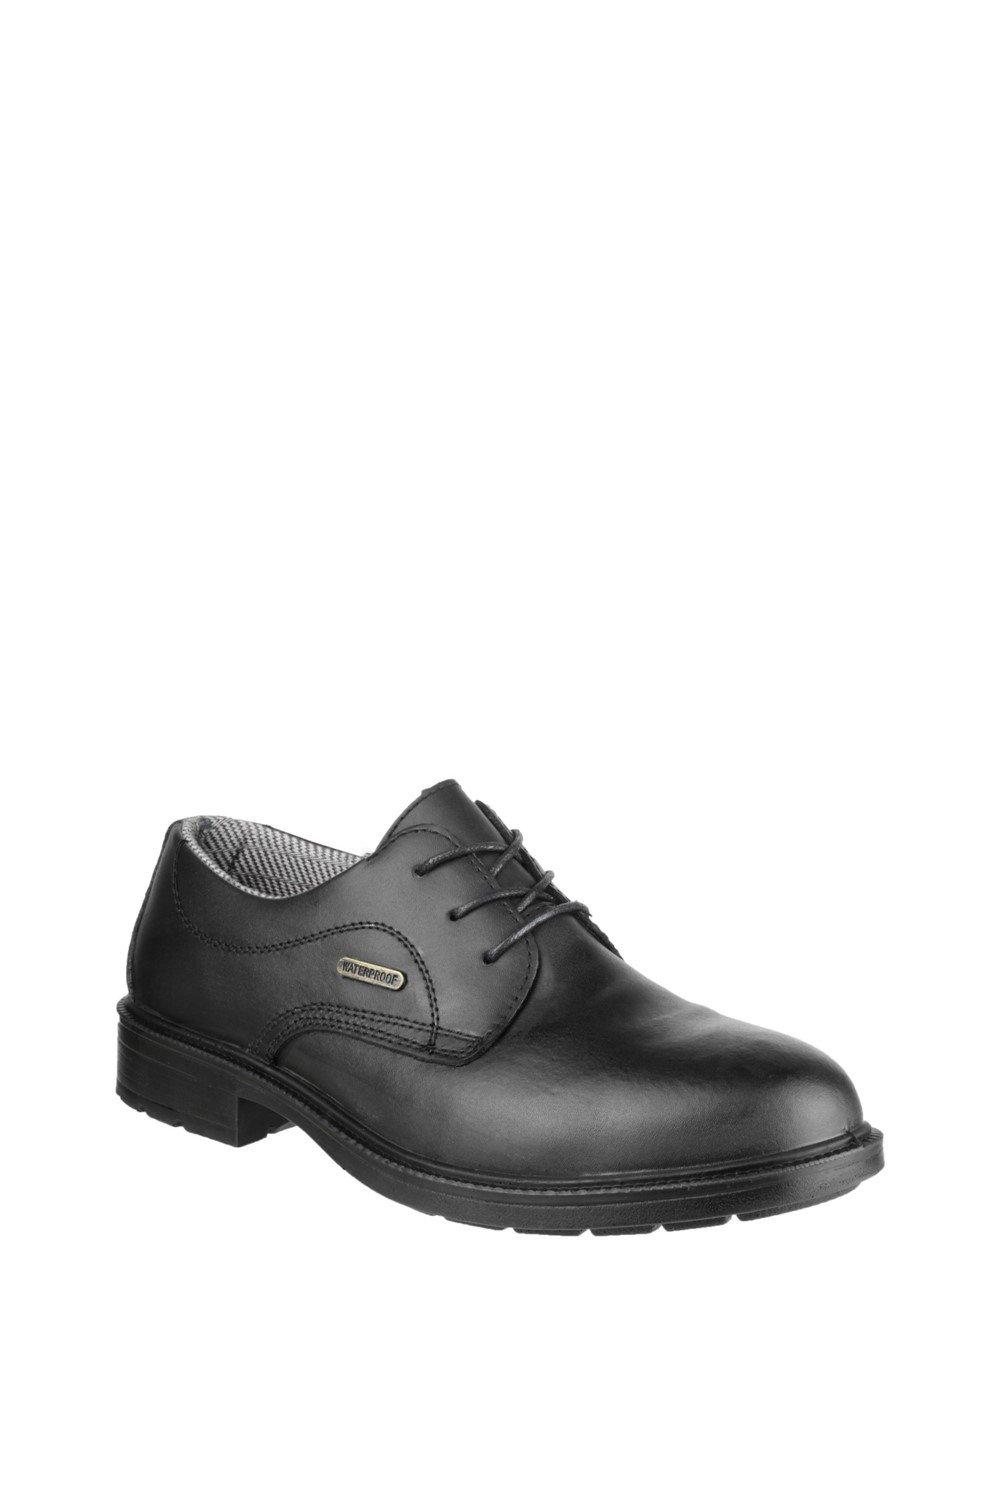 Защитная обувь 'FS62' Amblers Safety, черный